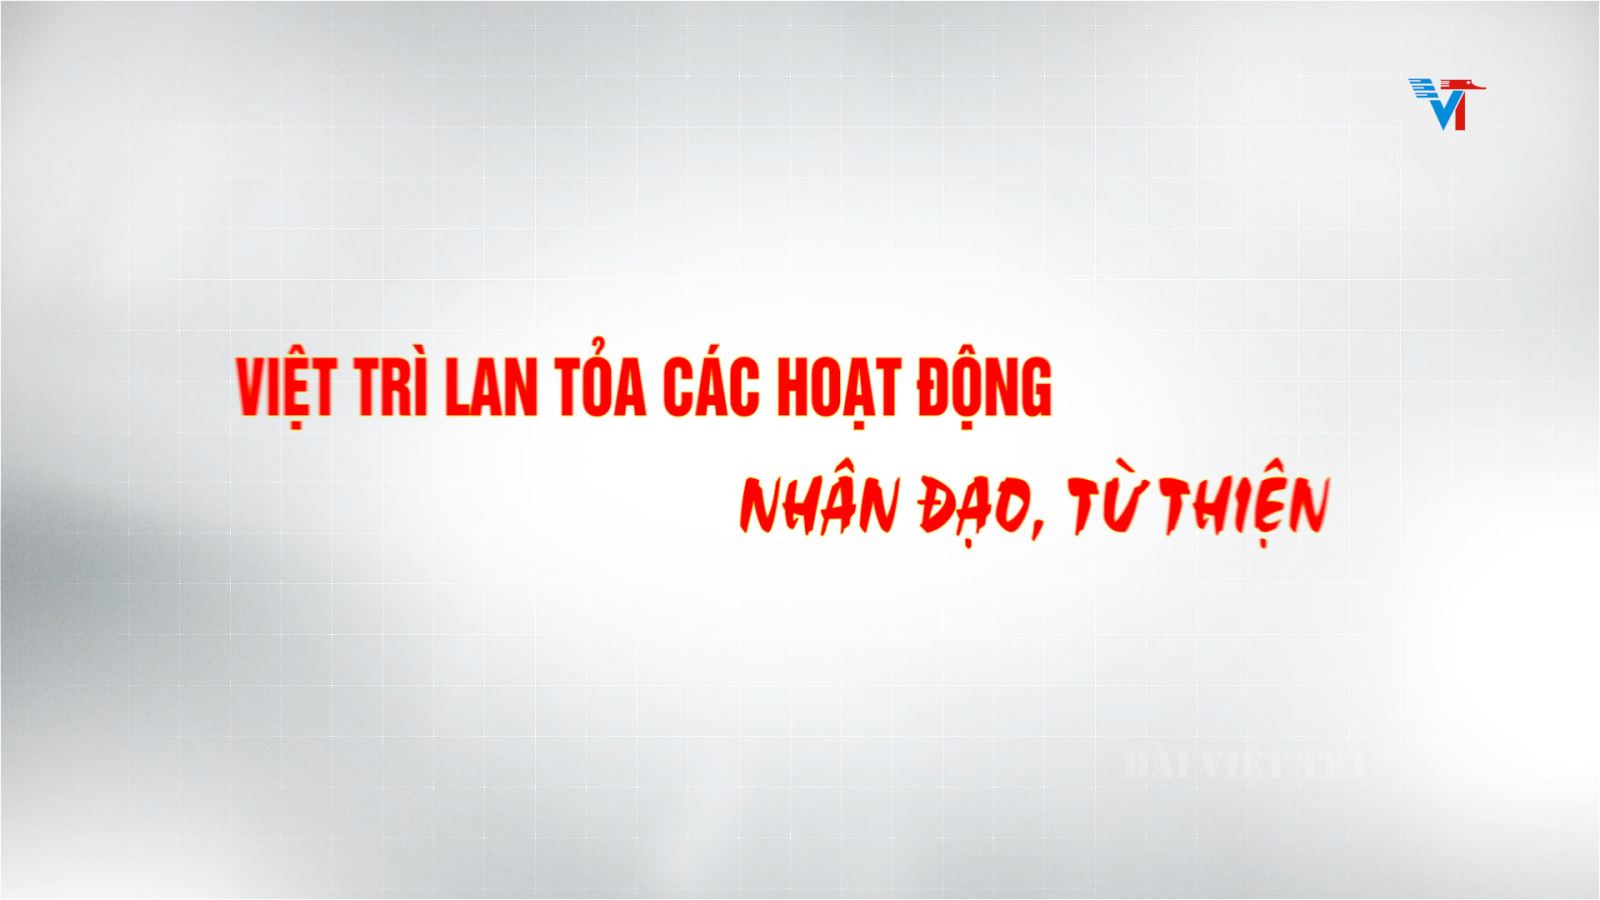 Việt Trì lan tỏa hoạt động nhân đạo, từ thiện